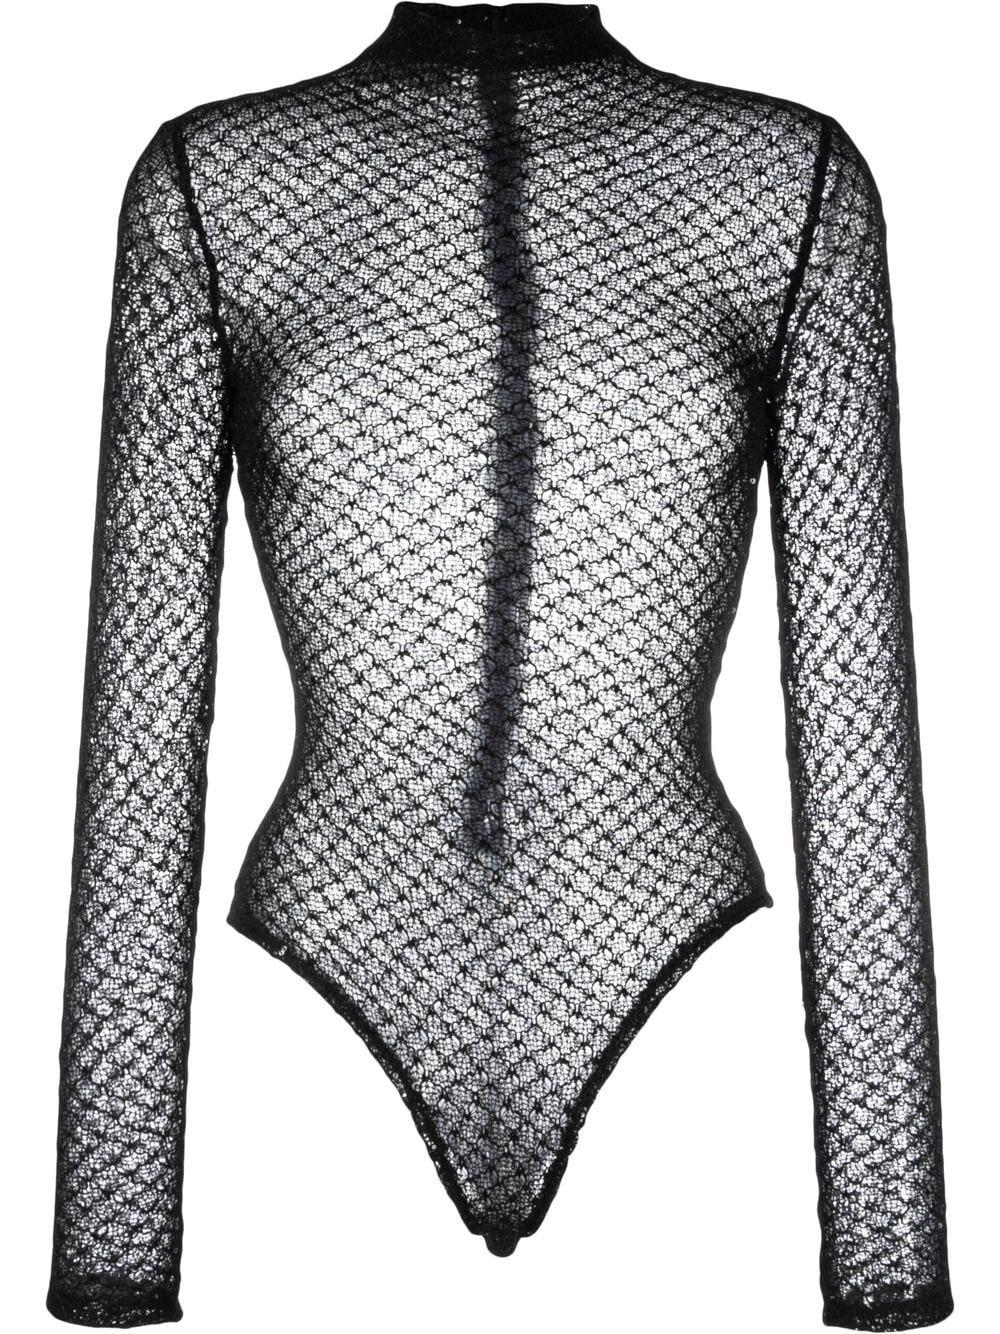 Atu Body Couture Sequin Mesh Bodysuit in Black | Lyst